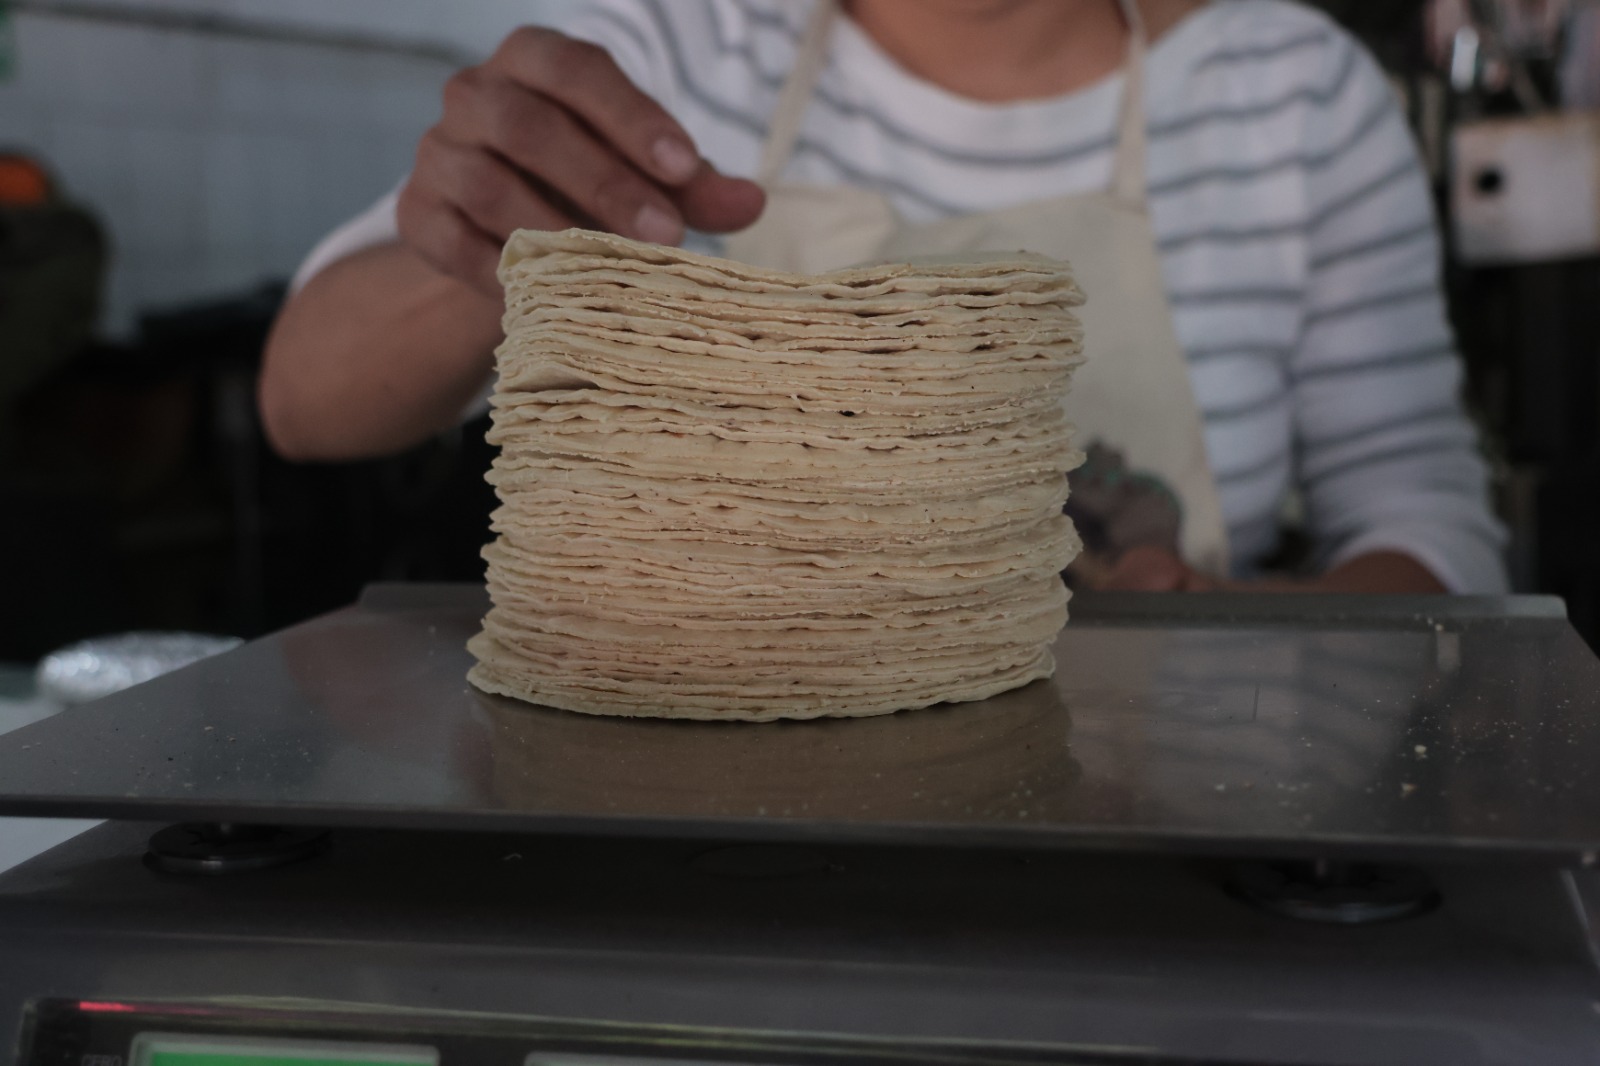 Disminuye precio del maíz y el gas, pero precio de la tortilla se mantiene: Canaco San Pedro